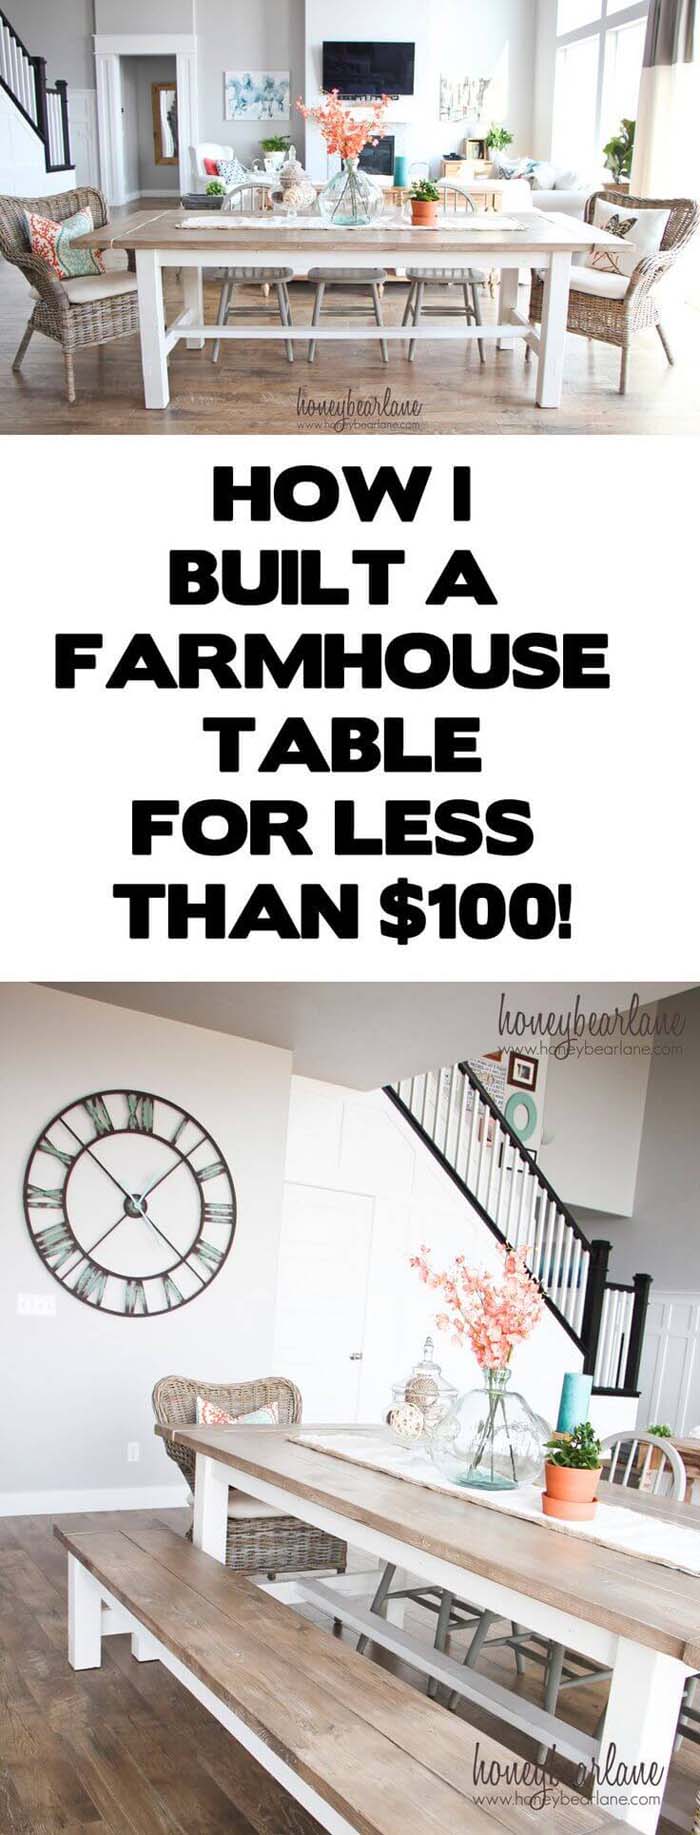 DIY Farmhouse Table And Bench #diy #farmhouse #table #decorhomeideas